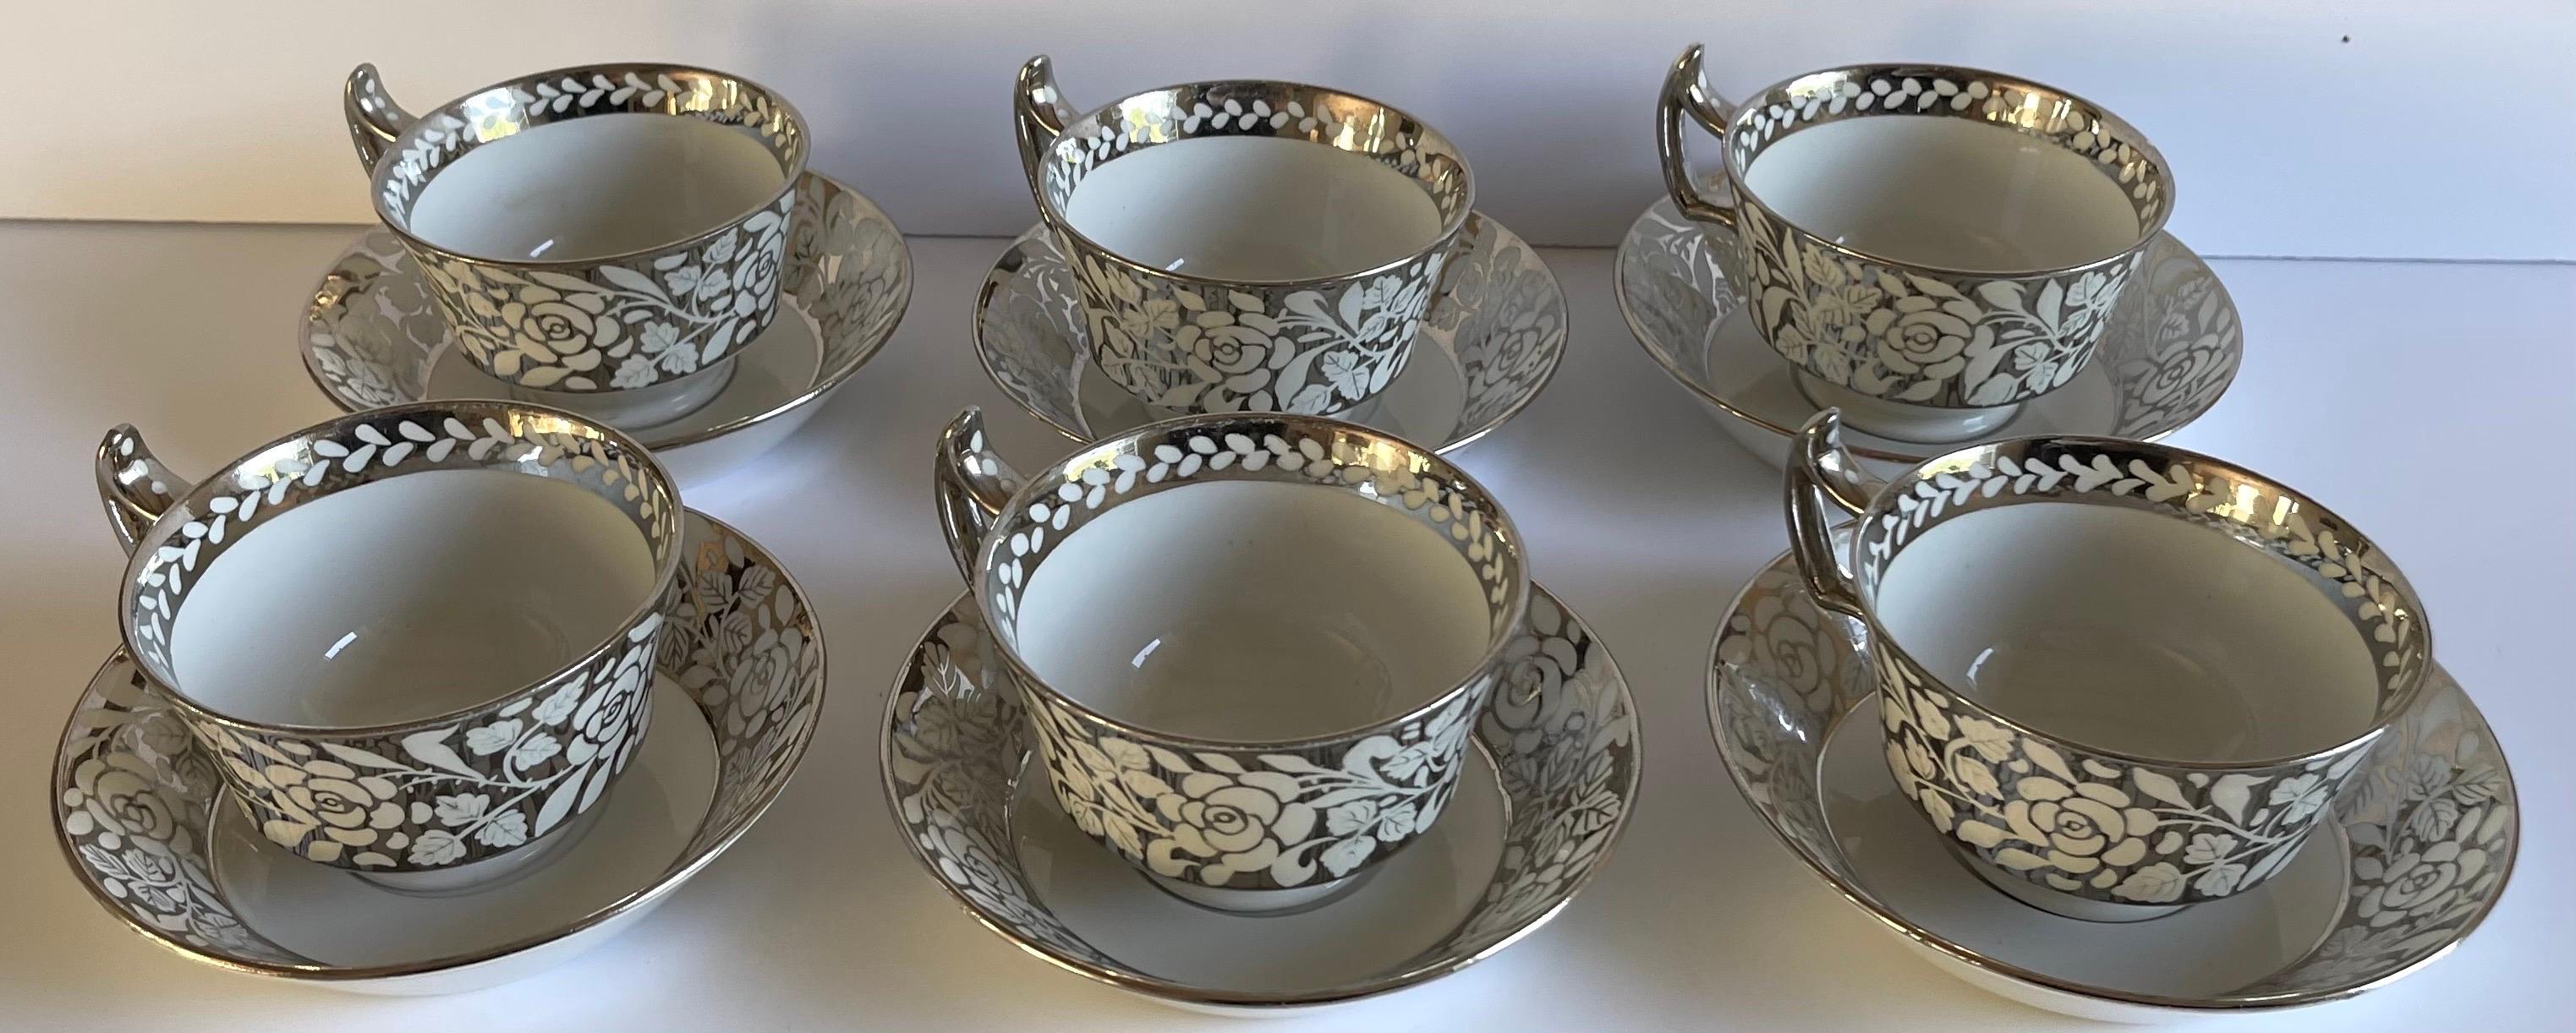 Satz von sechs Wedgwood Lusterware Teetassen und Untertassen aus den 1930er Jahren. Insgesamt silbernes Blumenmotiv auf Bone China Hintergrund. Das Set enthält 6 Teetassen und 6 Untertassen, insgesamt 12 Stück. 
Jedes Stück ist auf der Unterseite